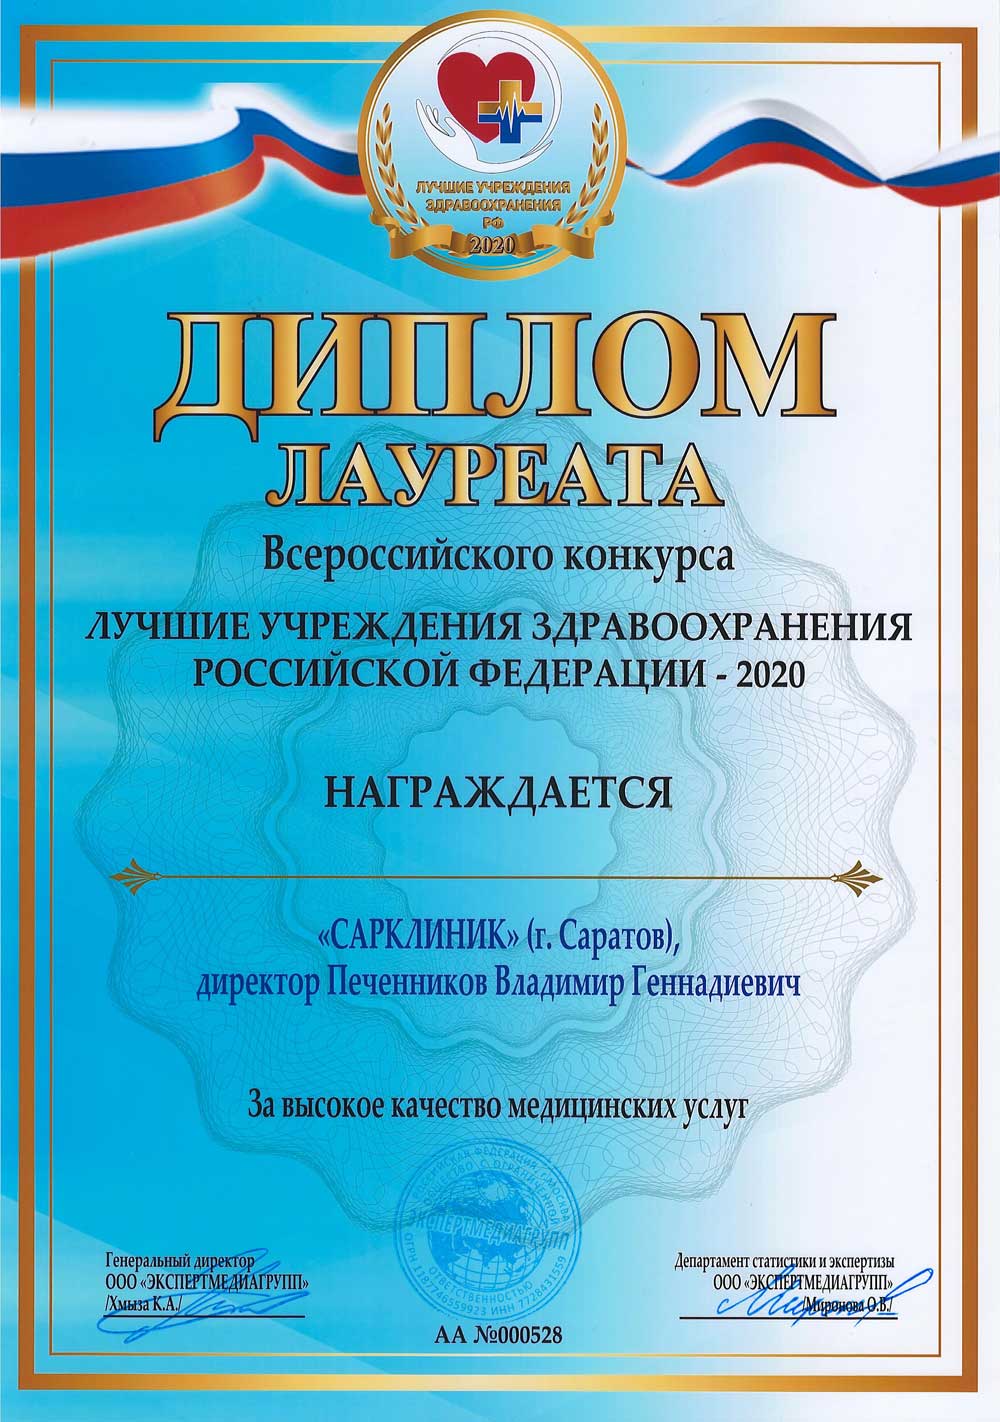 Сарклиник - победитель конкурса "Лучшие медицинские учреждения Российской Федерации 2020"